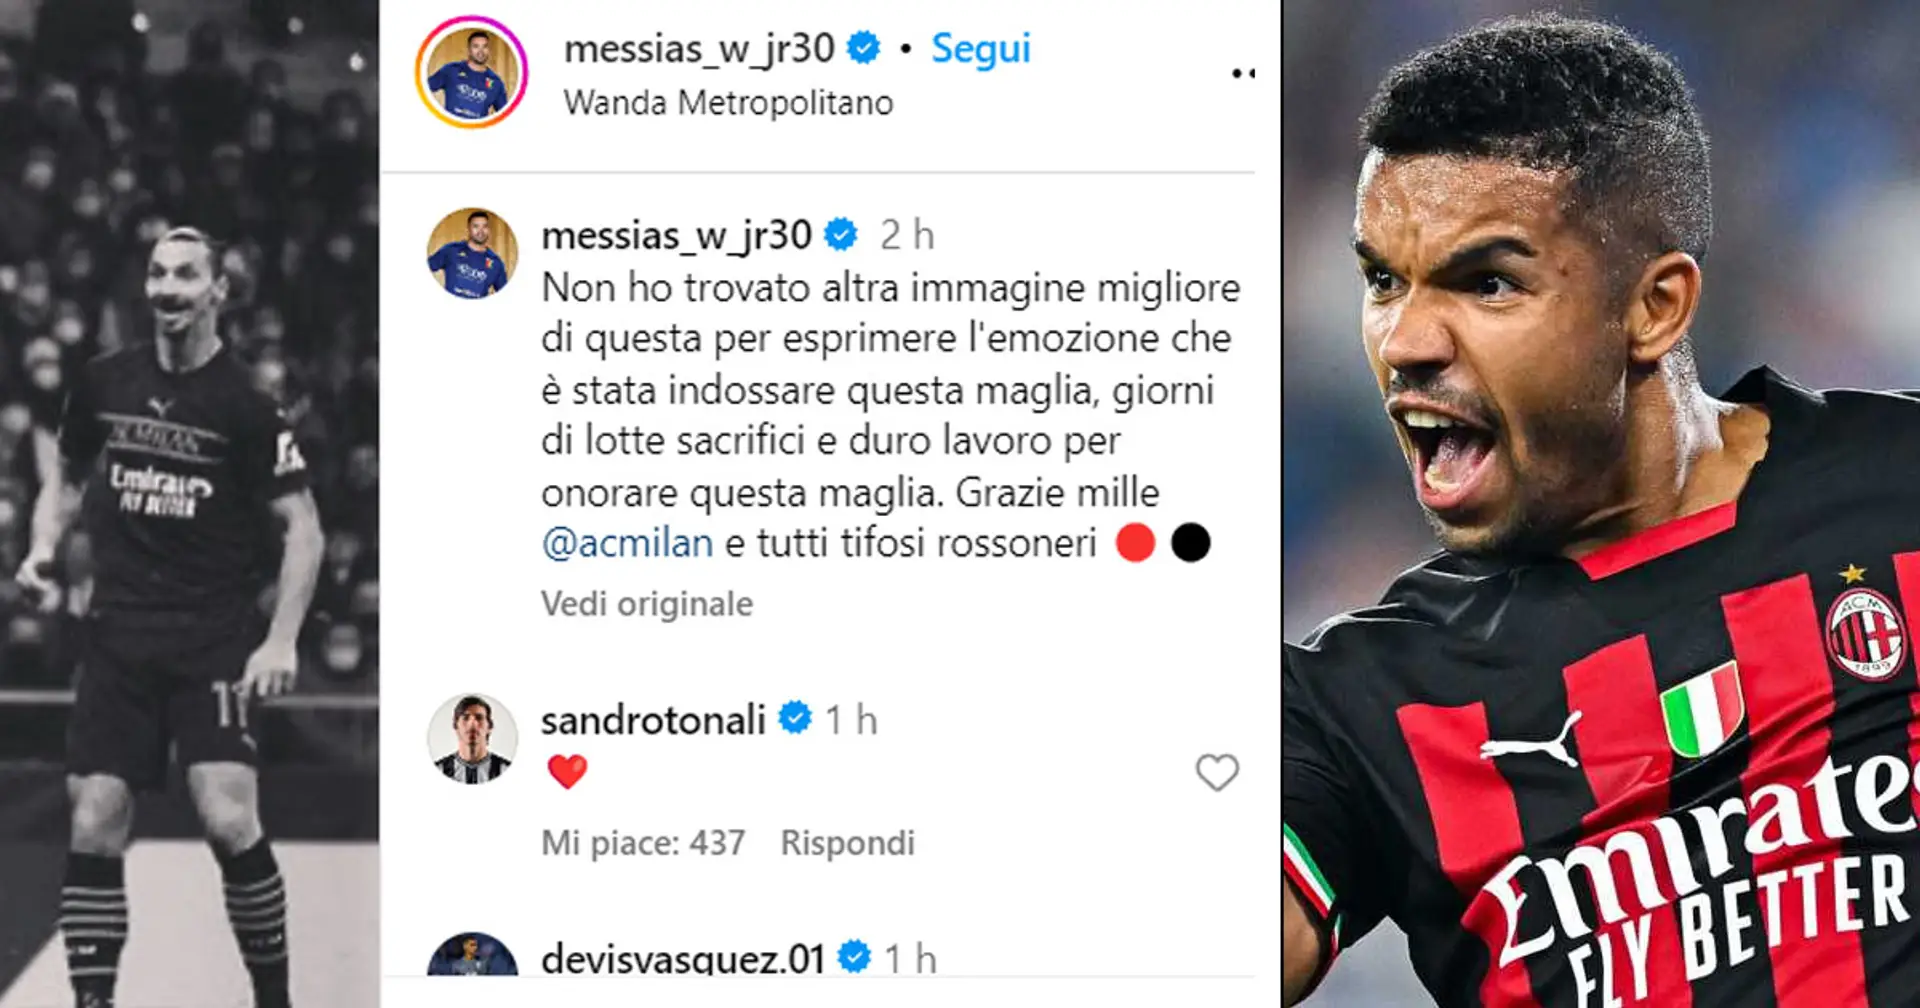 "Non ho trovato immagine migliore", Messias saluta i tifosi del Milan con un ricordo 'europeo'